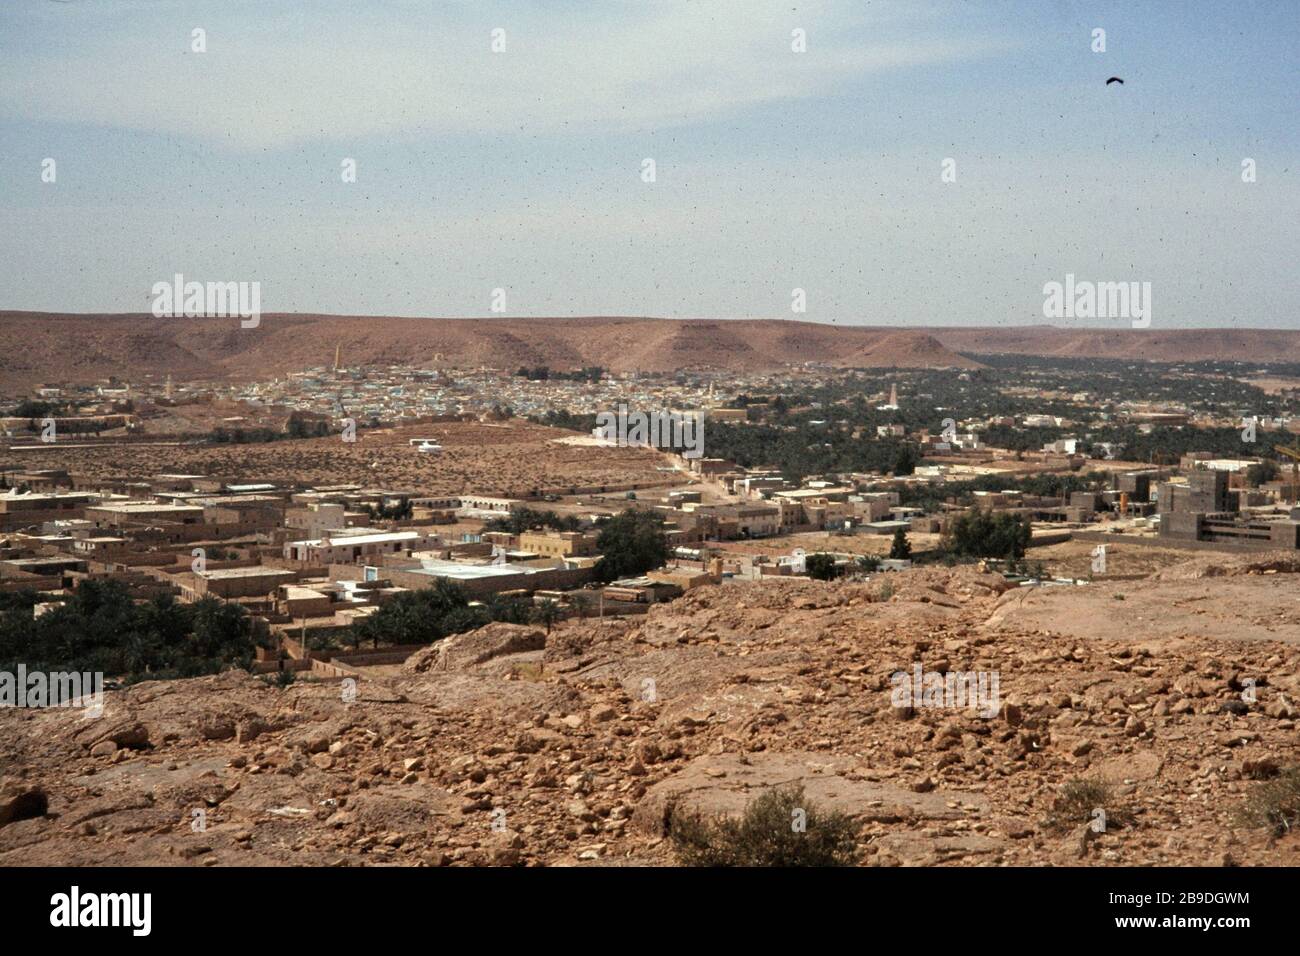 L'oasis ville de Ghardaia à m'zab dans le nord du Sahara. [traduction automatique] Banque D'Images